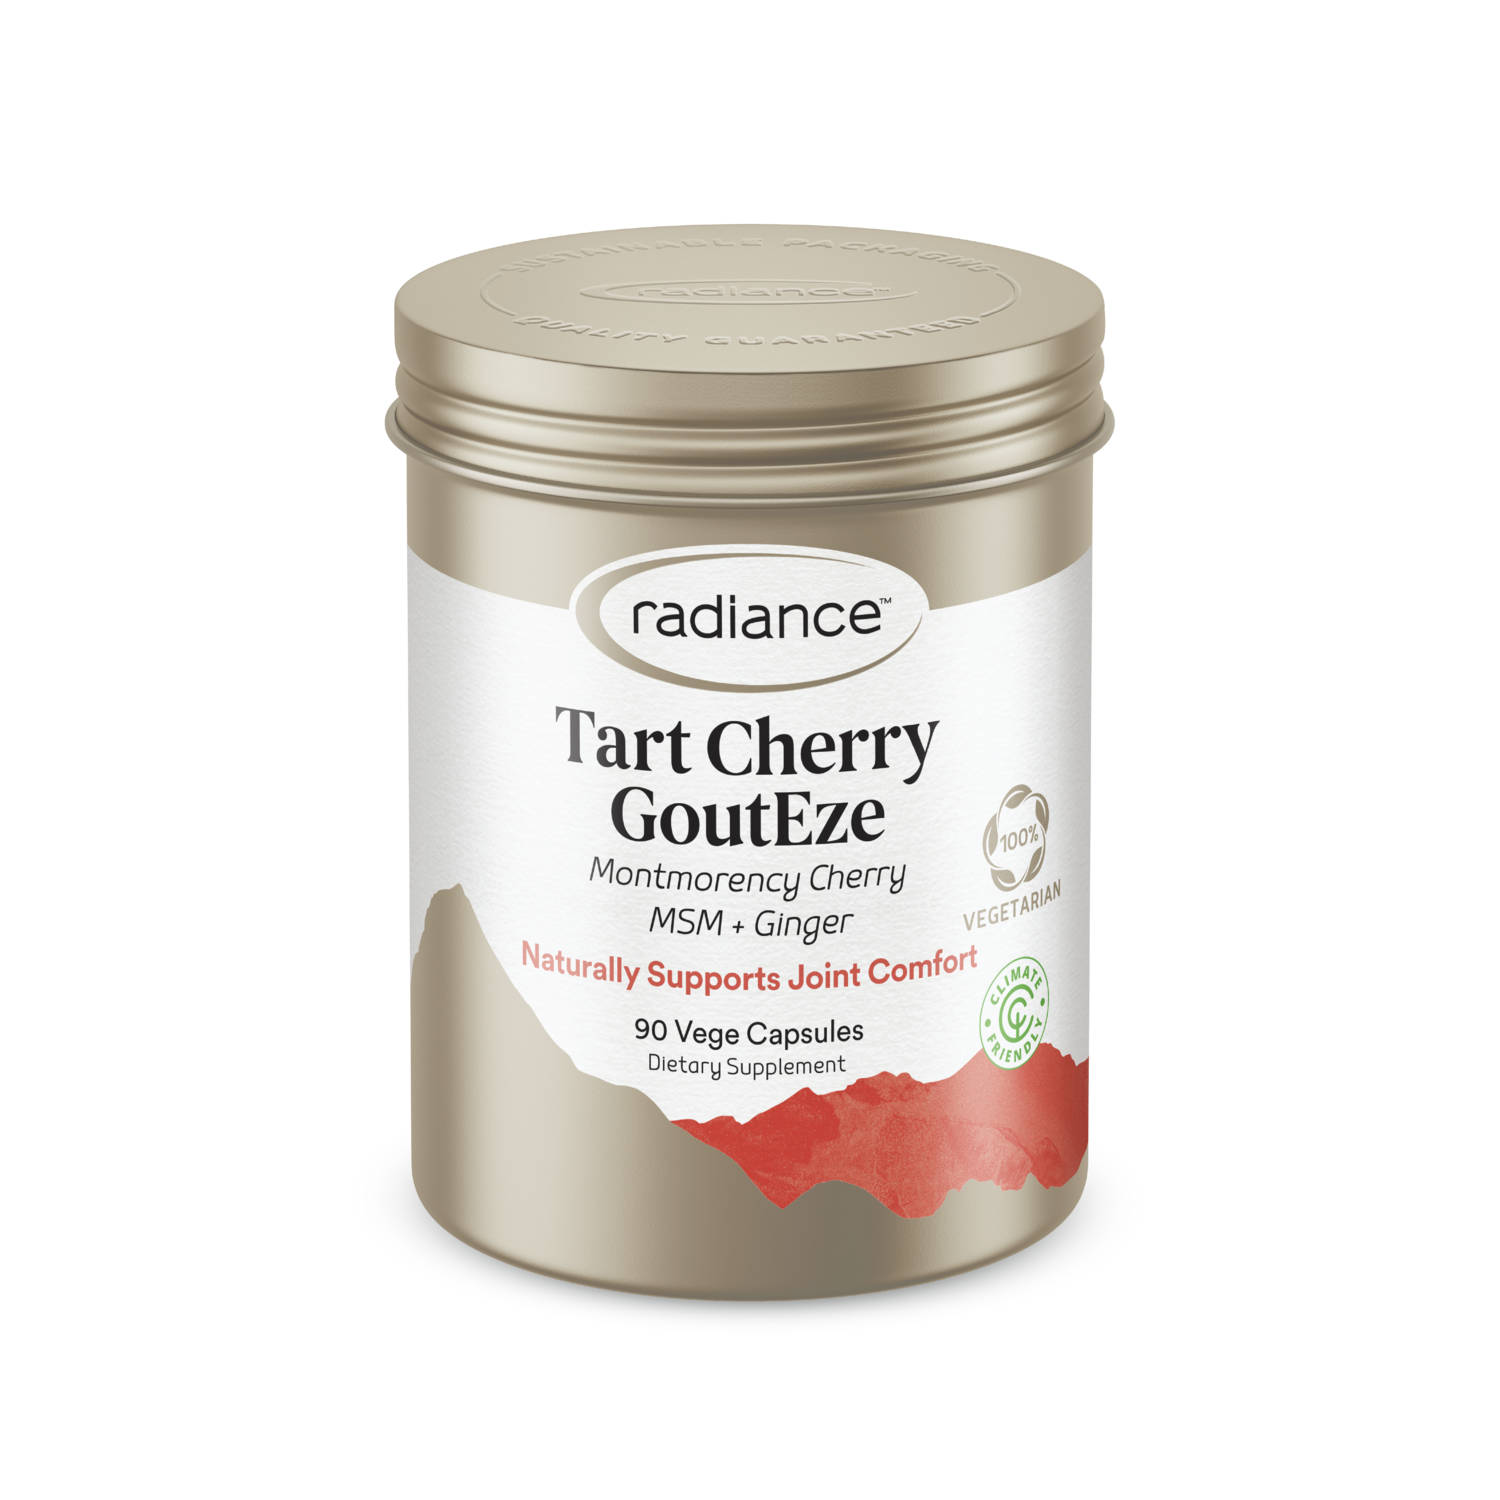 Tart Cherry Gouteze